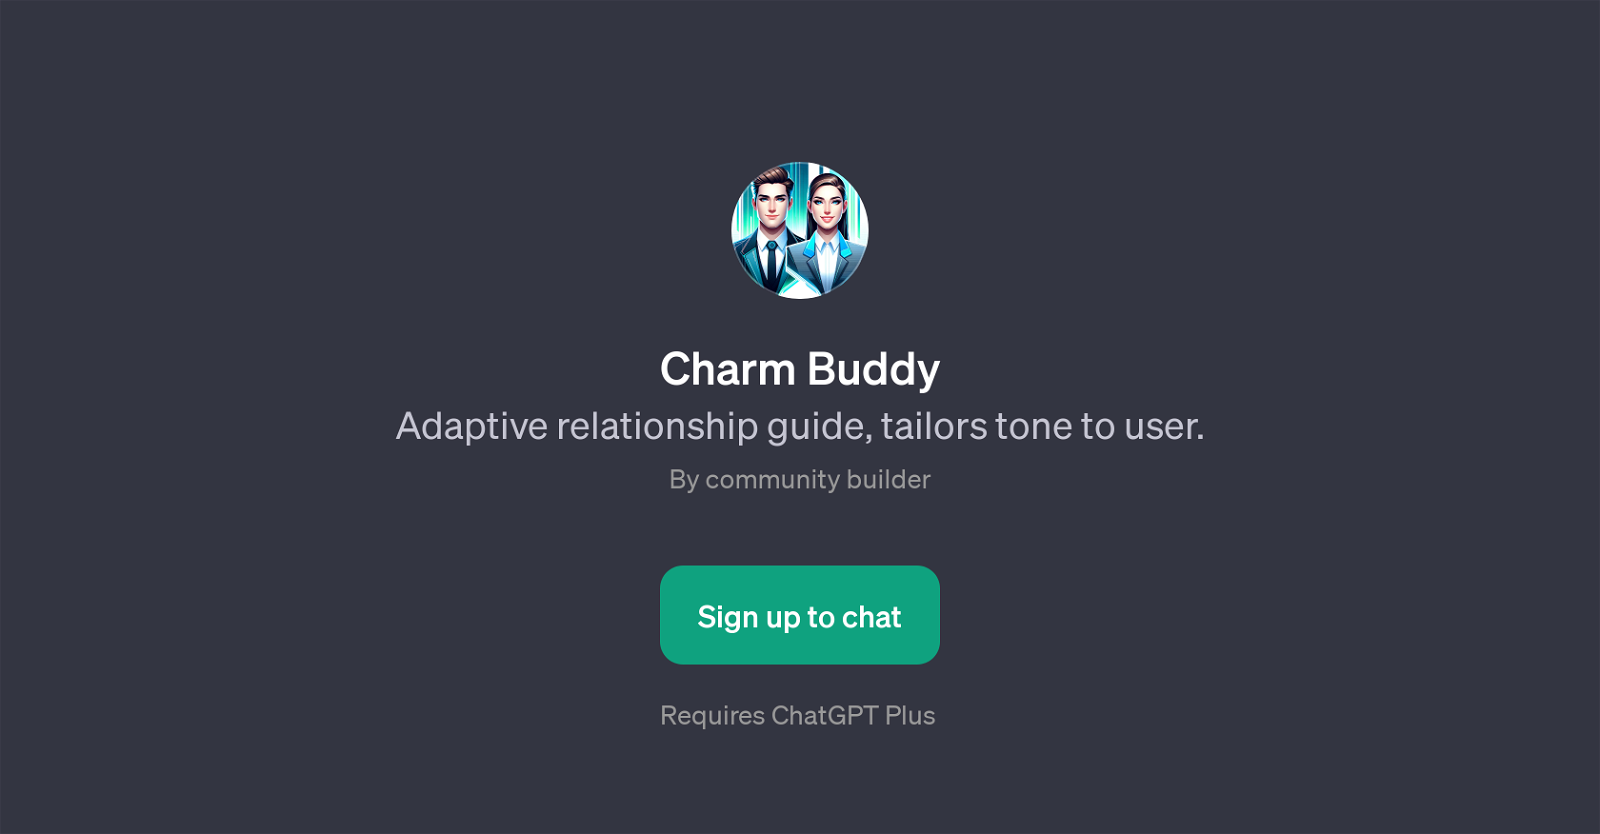 Charm Buddy website